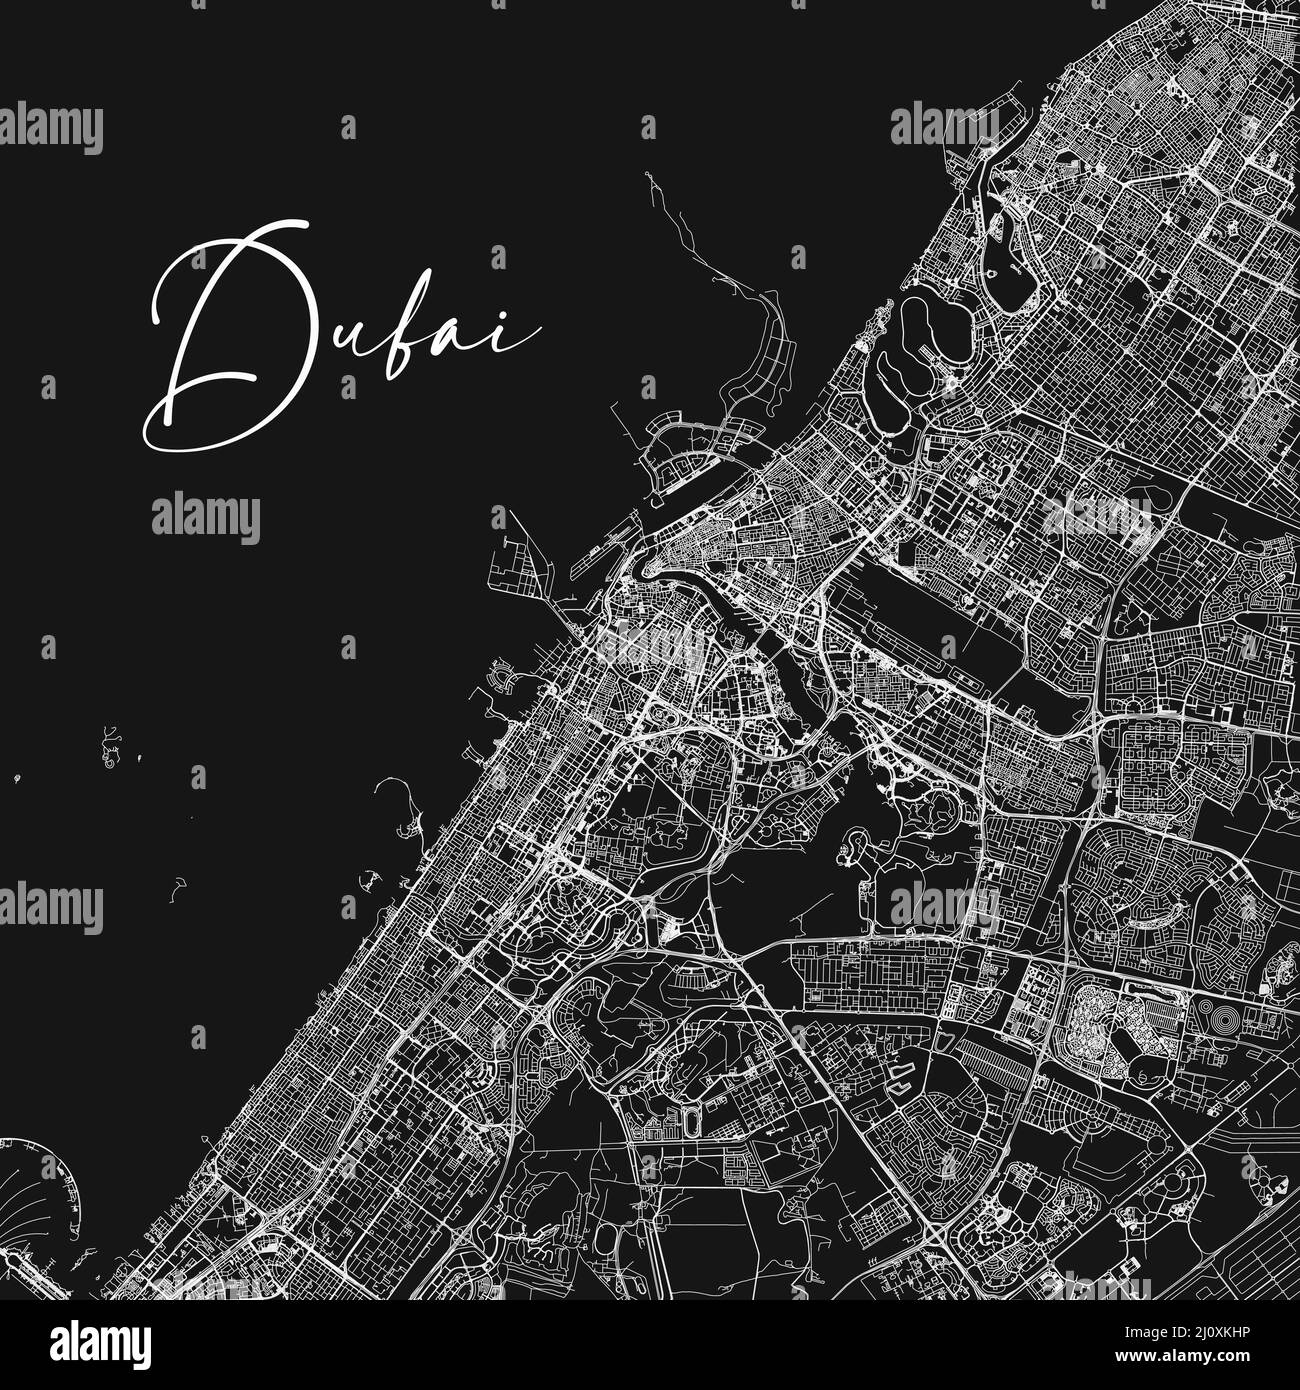 Mappa vettoriale di Dubai. Mappa vettoriale dettagliata dell'area amministrativa della città di Dubai. Paesaggio urbano poster vista aria metropolitana. Illustrazione Vettoriale